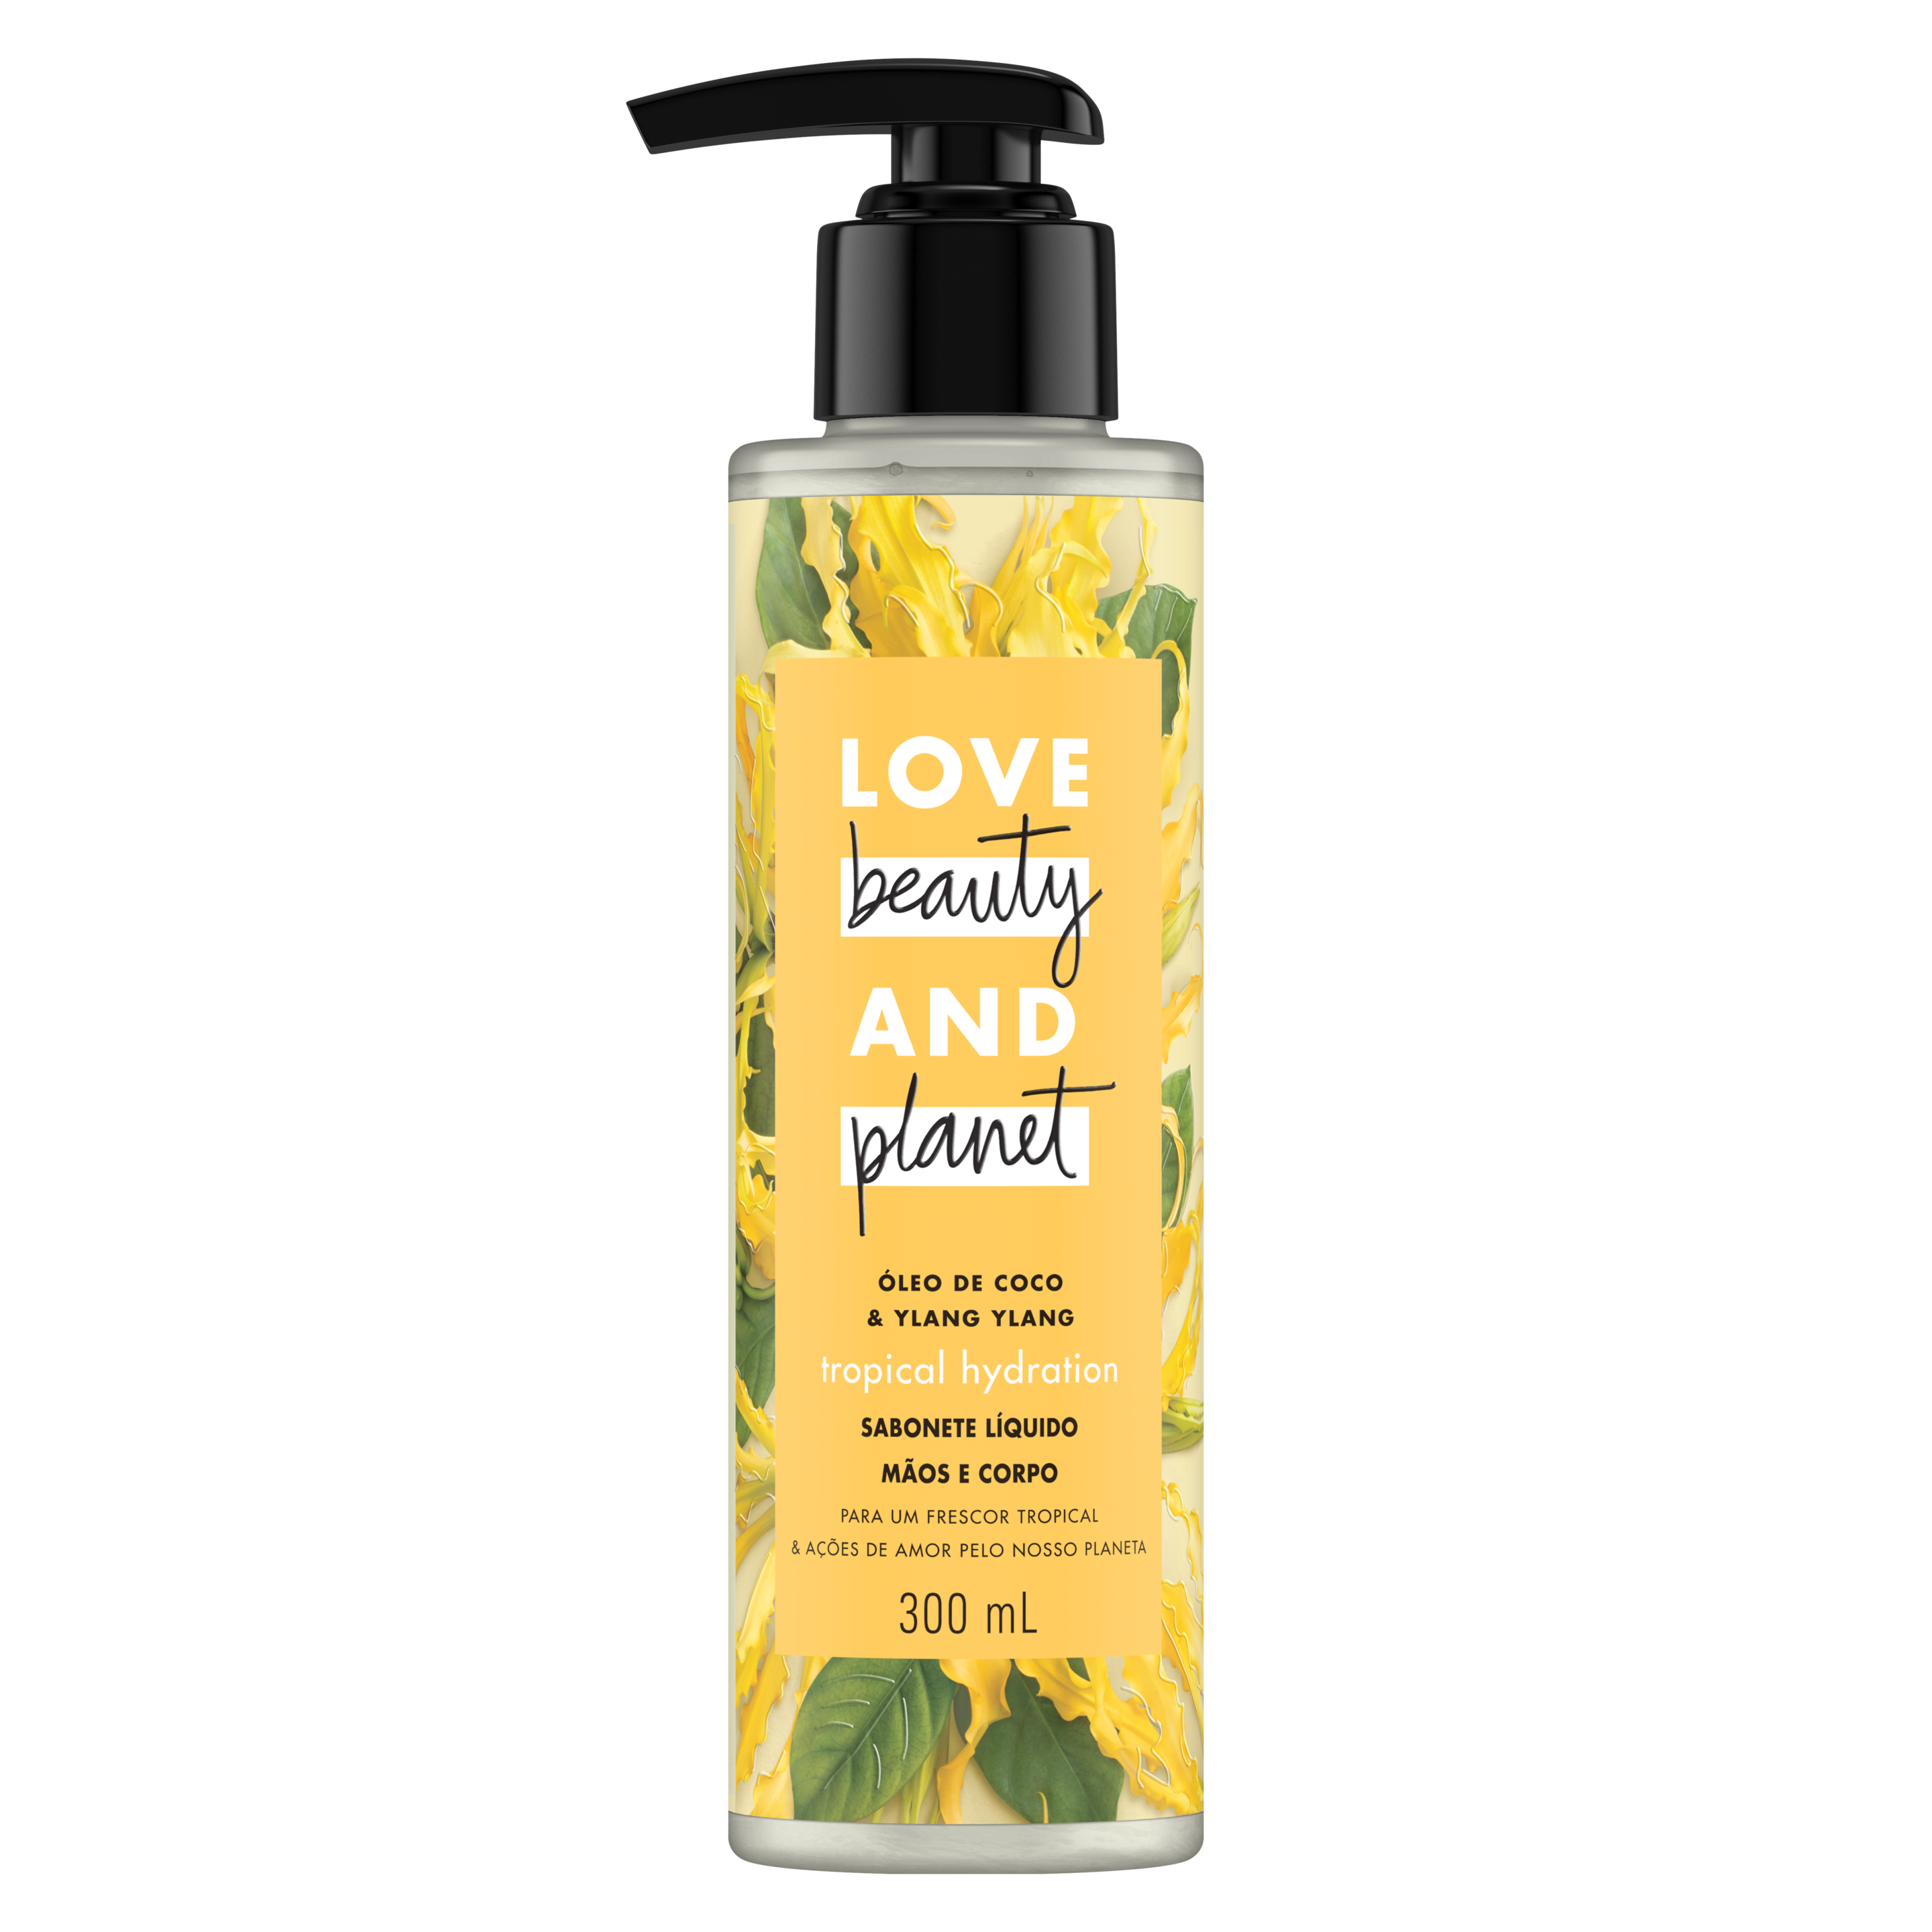 Frente da embalagem do sabonete líquido para o corpo e mãos Love Beauty and Planet óleo de coco & ylang-ylang 300 ml Text